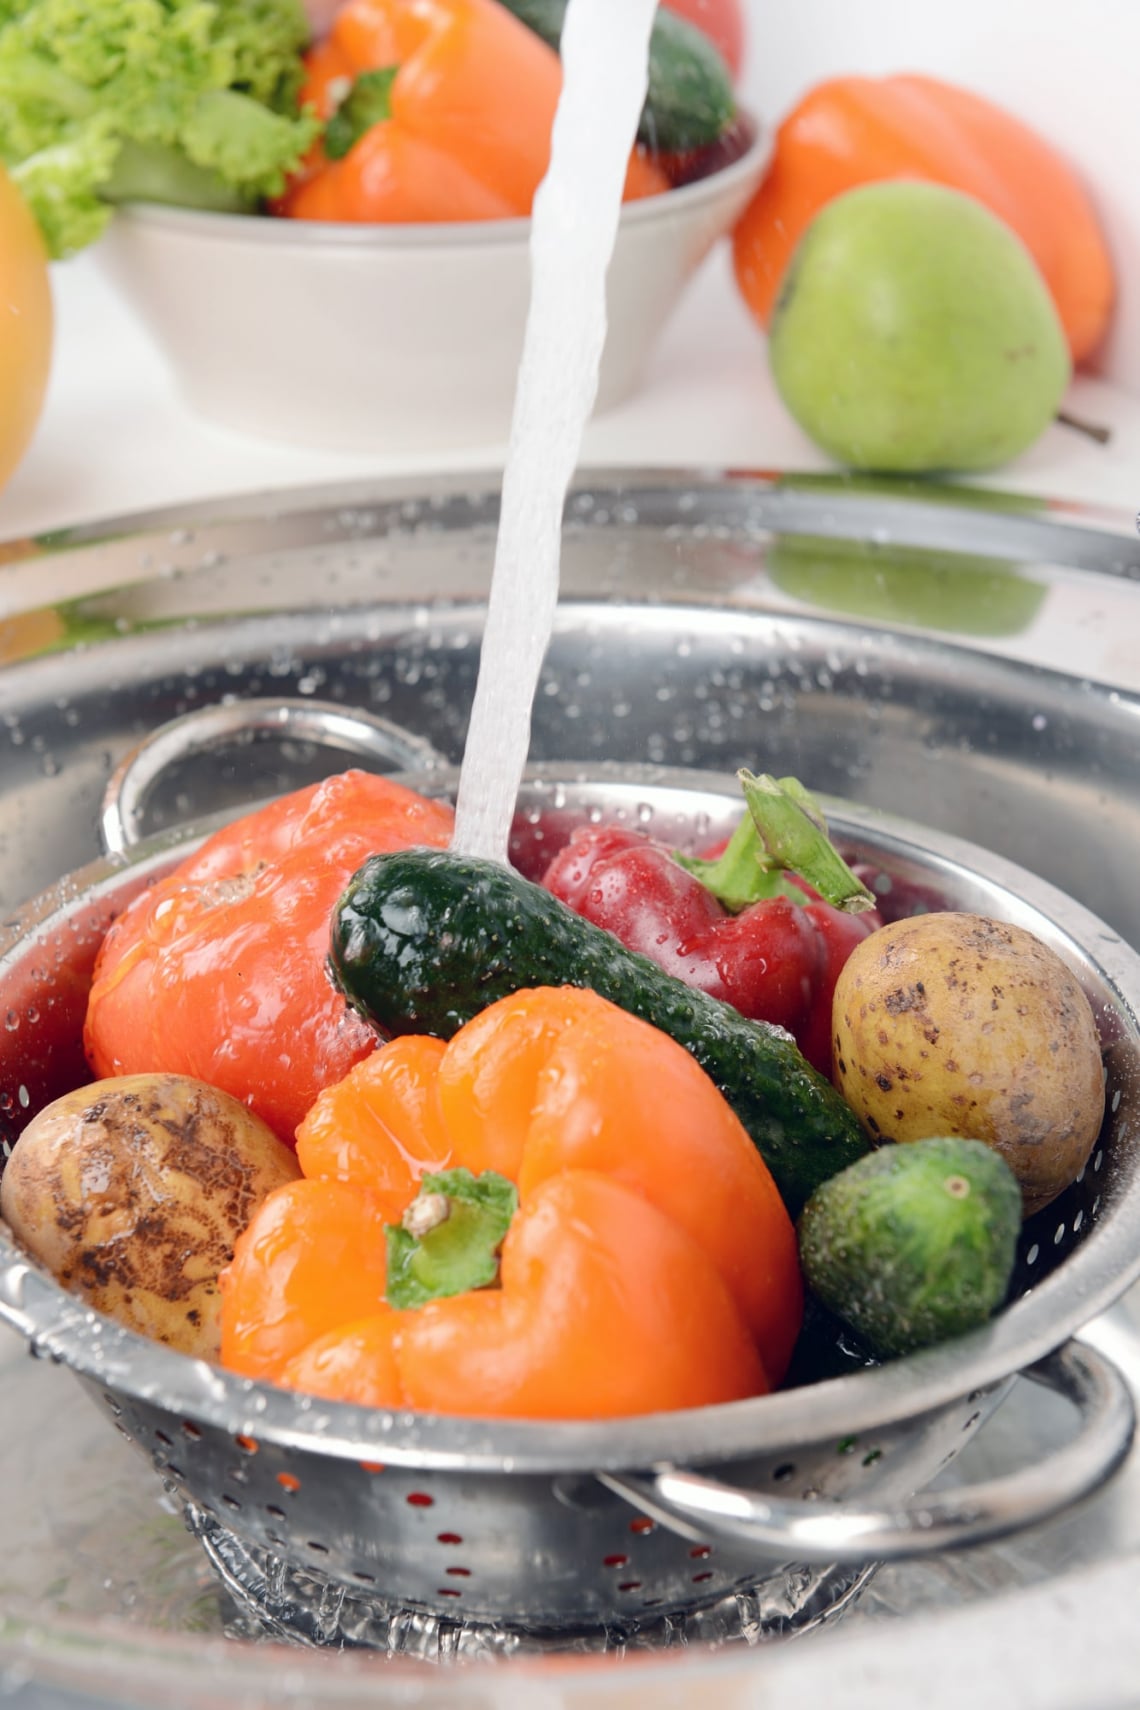 Mikor mossam meg a zöldségeket és gyümölcsöket?